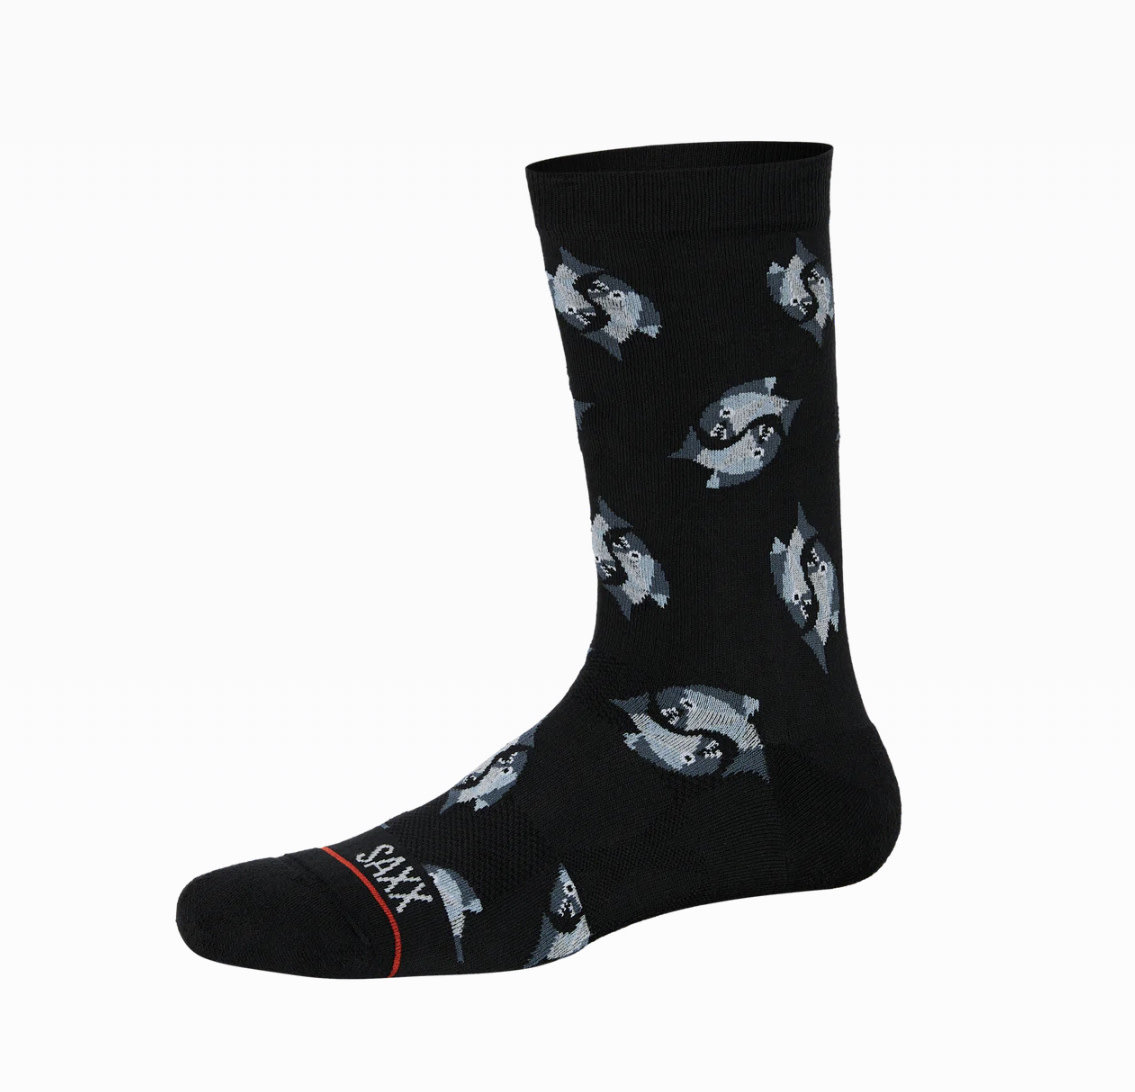 SAXX Black Angler Wrangler Socks - Benjamin's Menswear